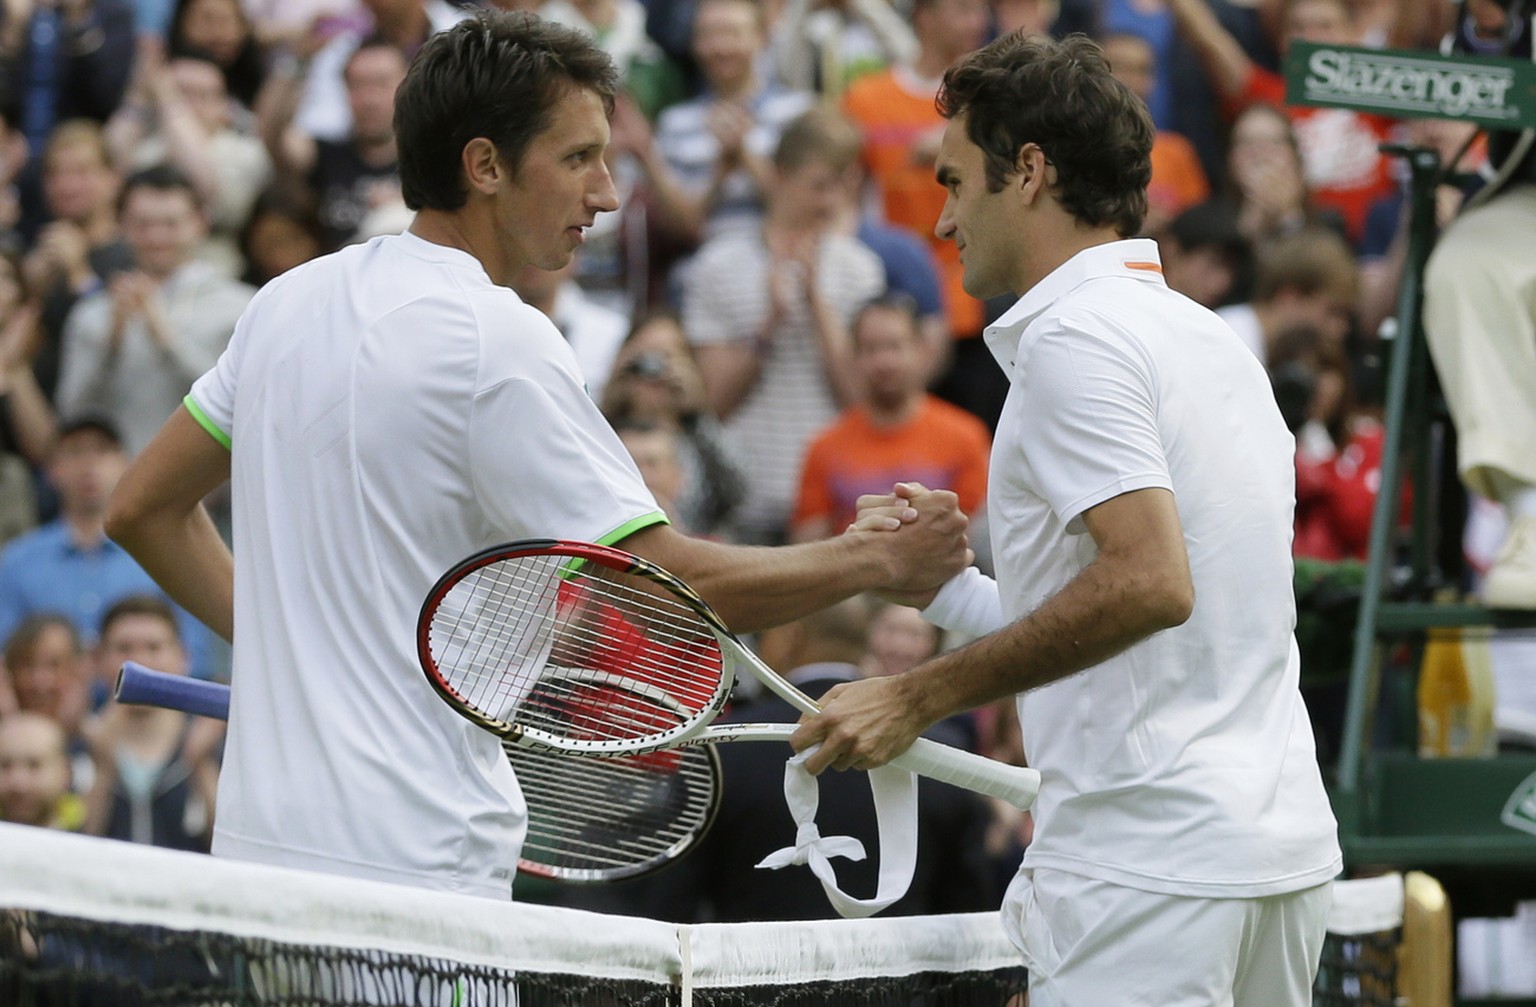 Handshake nach dem Match, das zwei Tenniskarrieren beeinflusste: Sergej Stachowski (links) und Roger Federer.